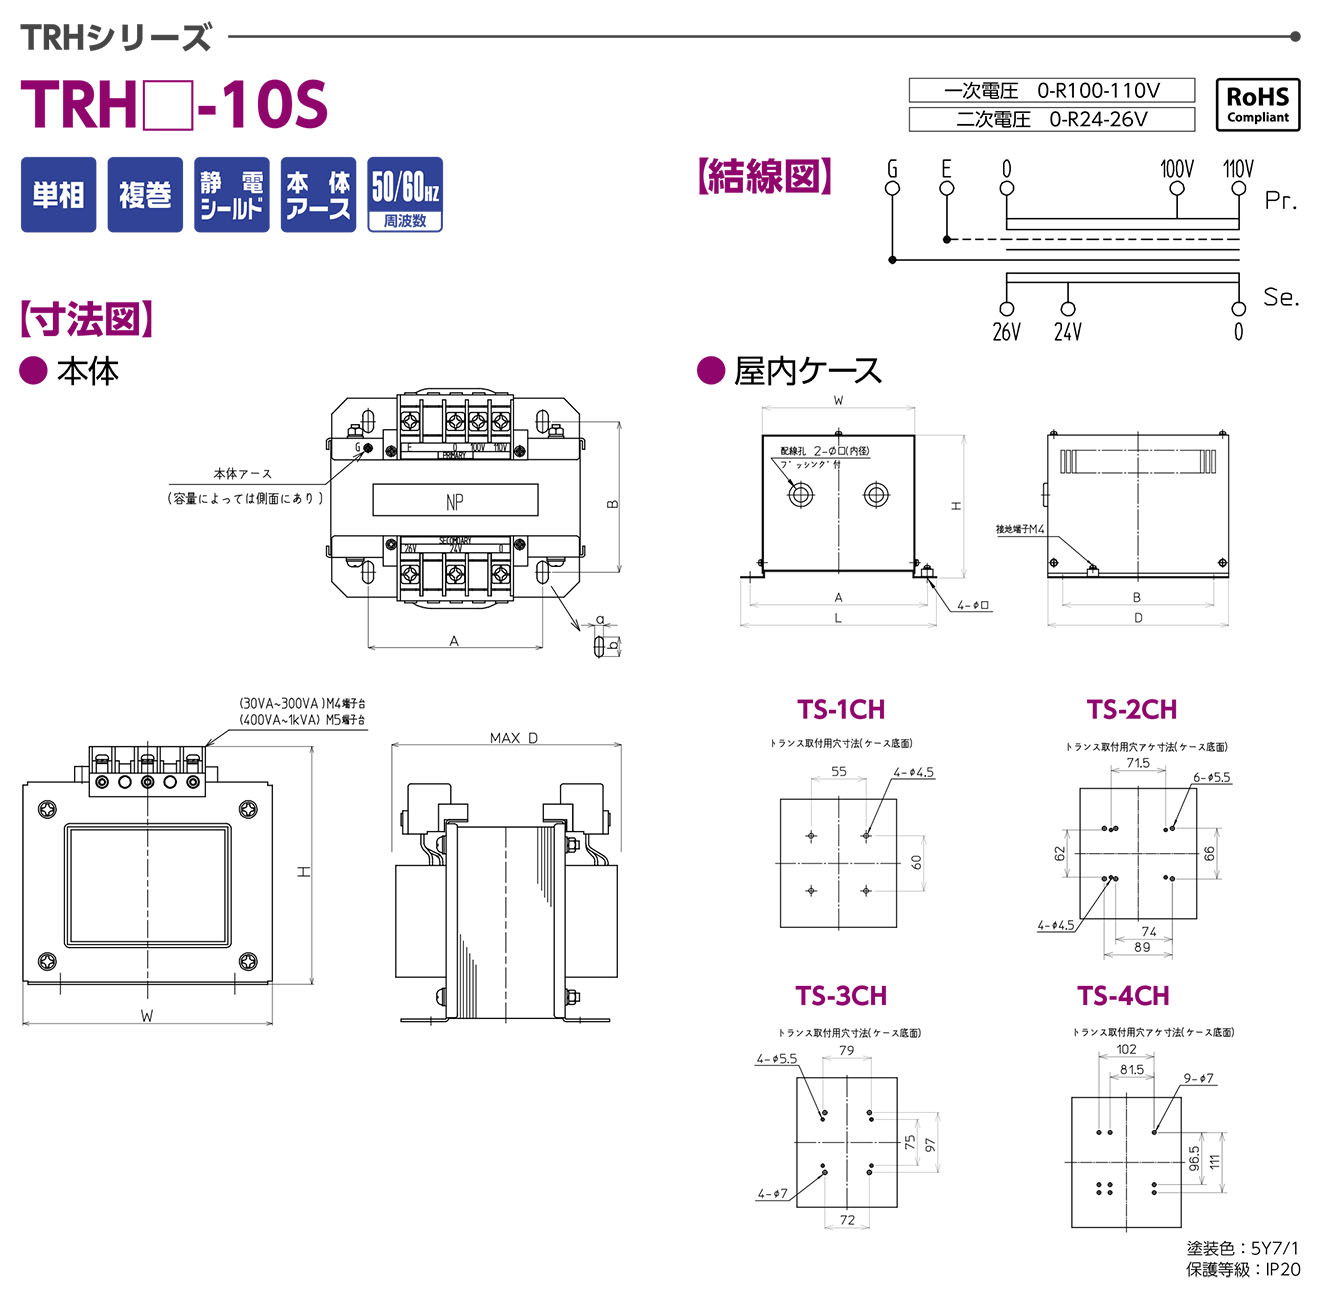 TRH-10S Biến áp 1 pha Togi 30VA~1kVA Vào 0-100-110VAC Ra 0-24-26VAC